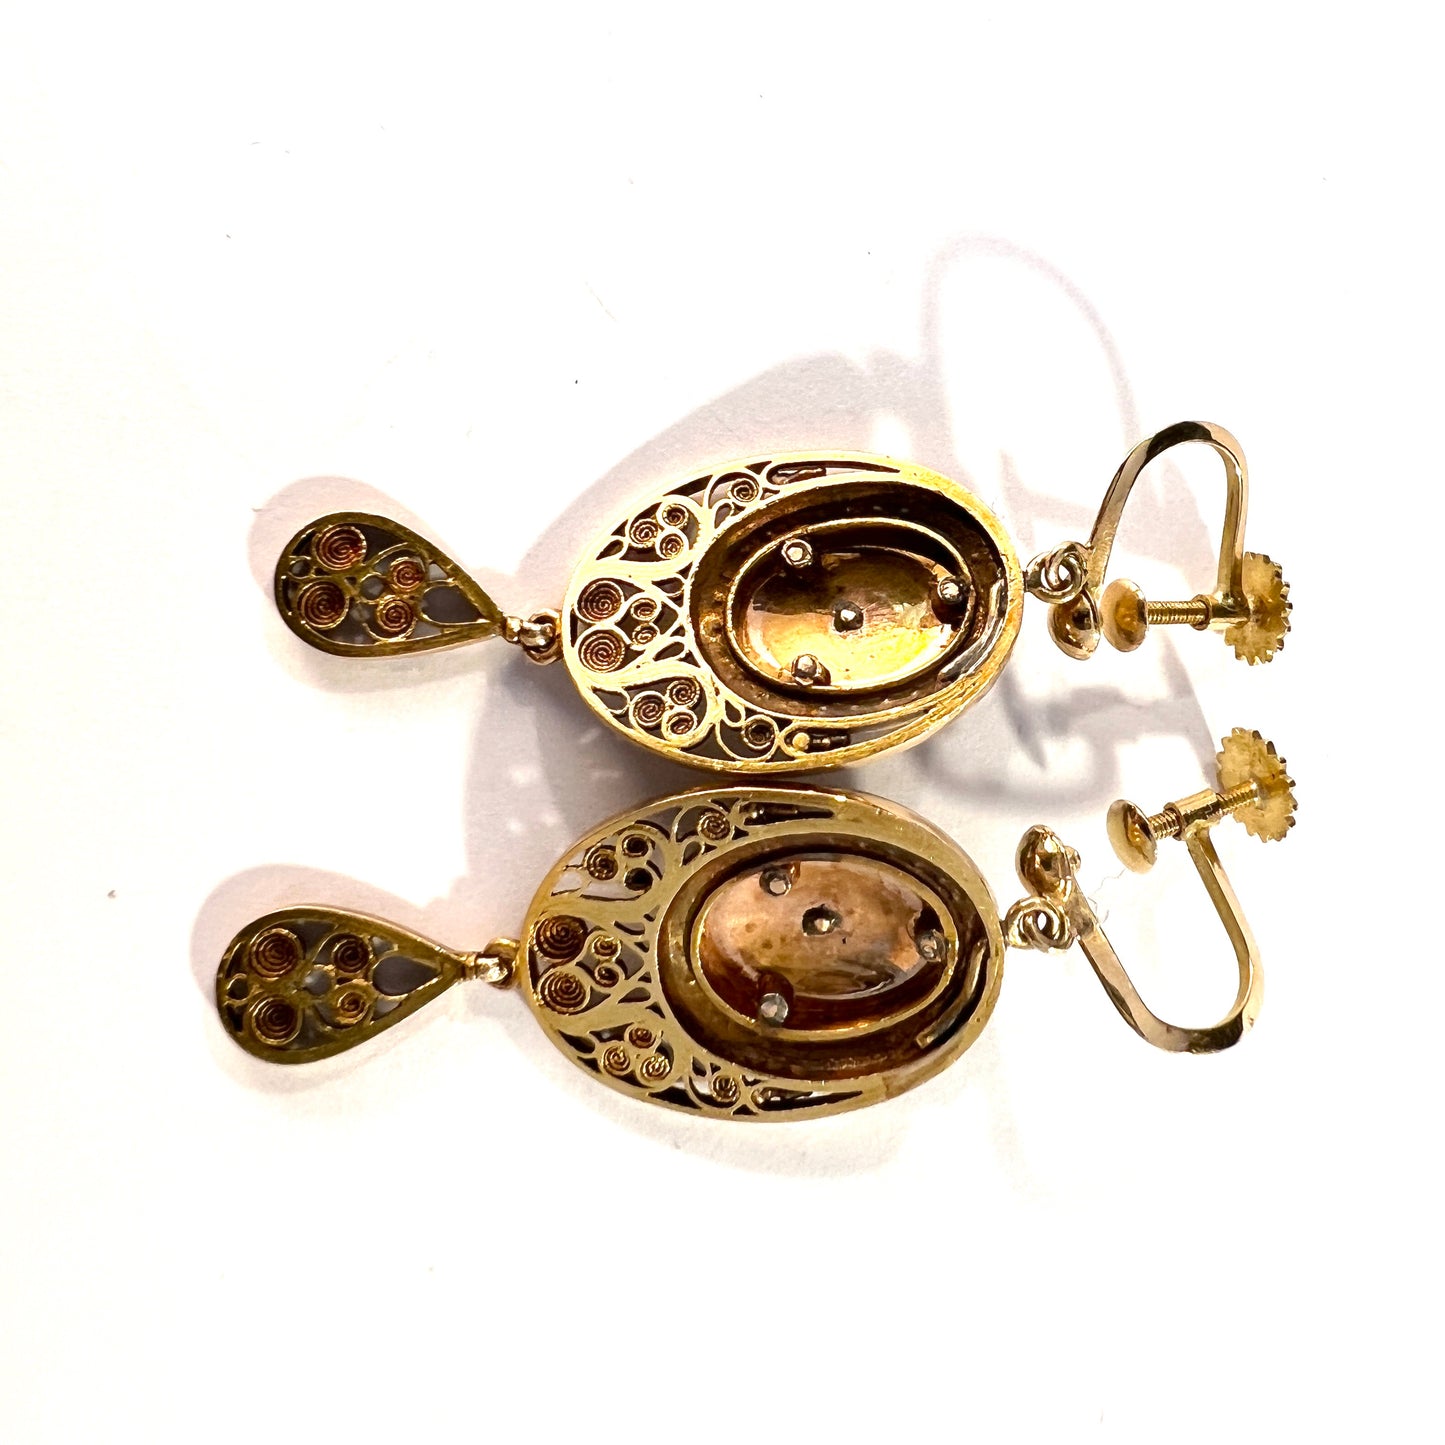 Antique Edwardian 18k Gold Diamond Enamel Pearl Earrings. Later Screw-Backs